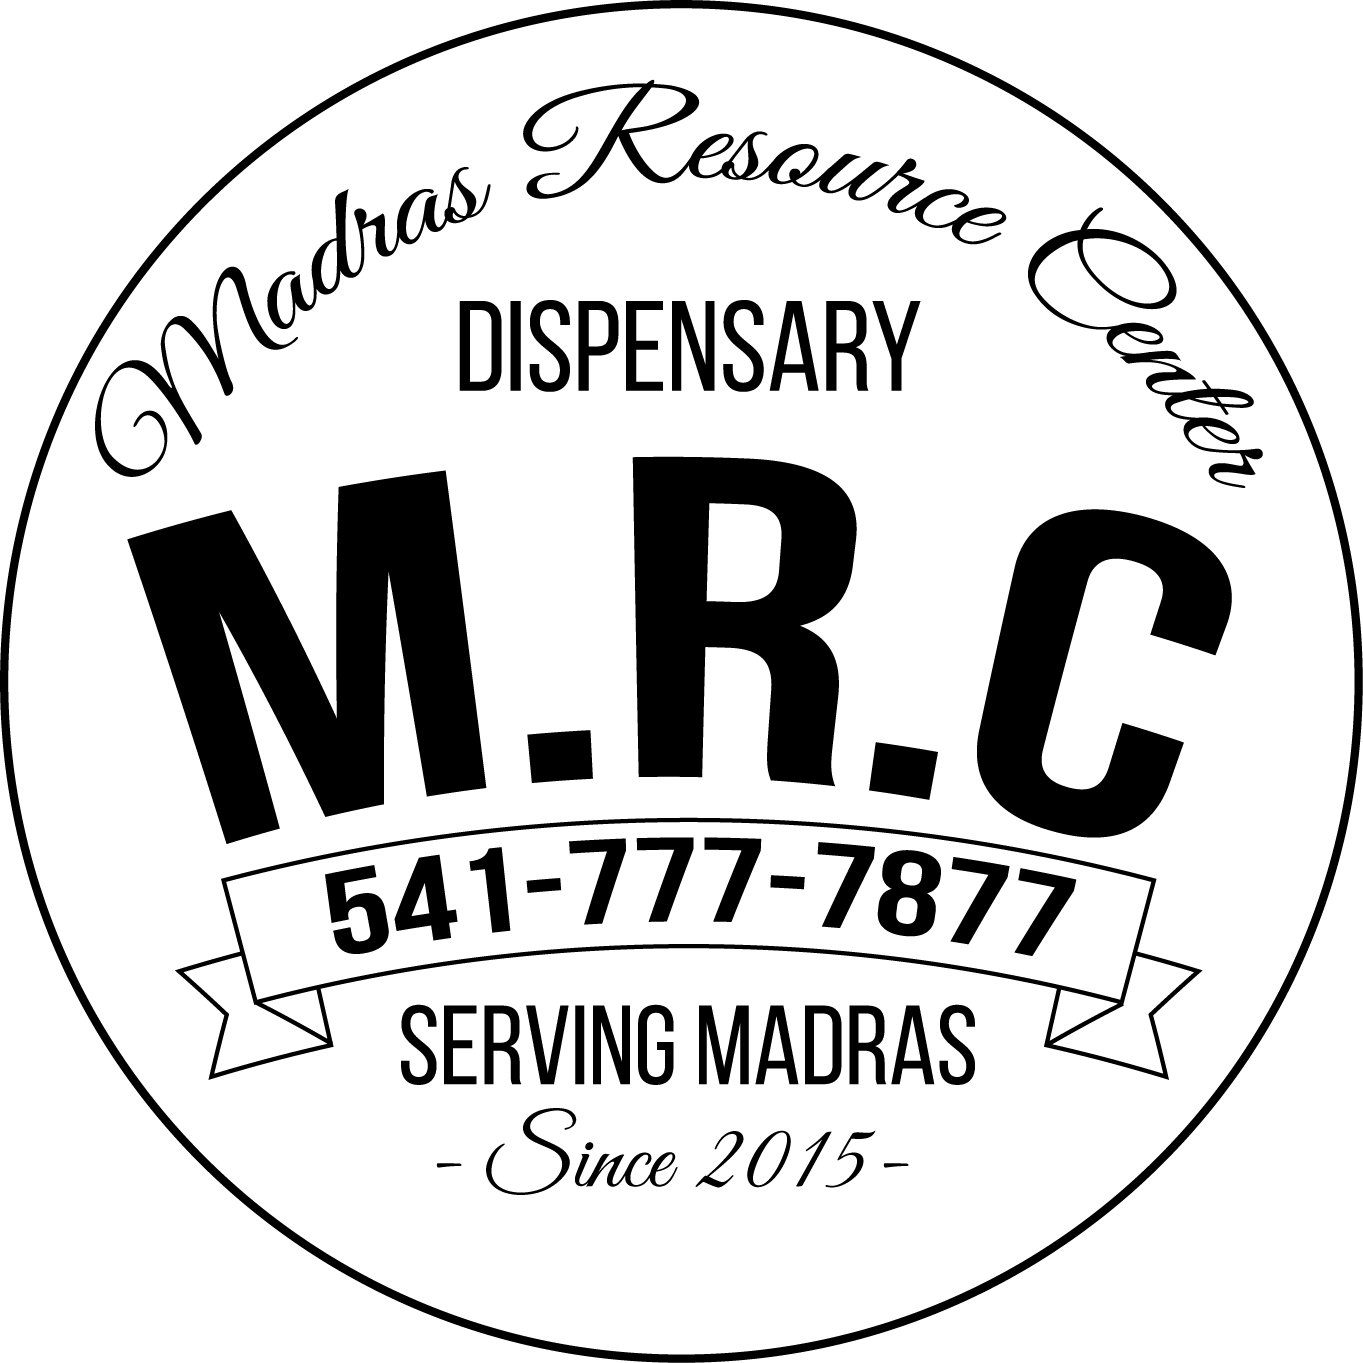 Madras Resource Center - Medical Marijuana Doctors - Cannabizme.com